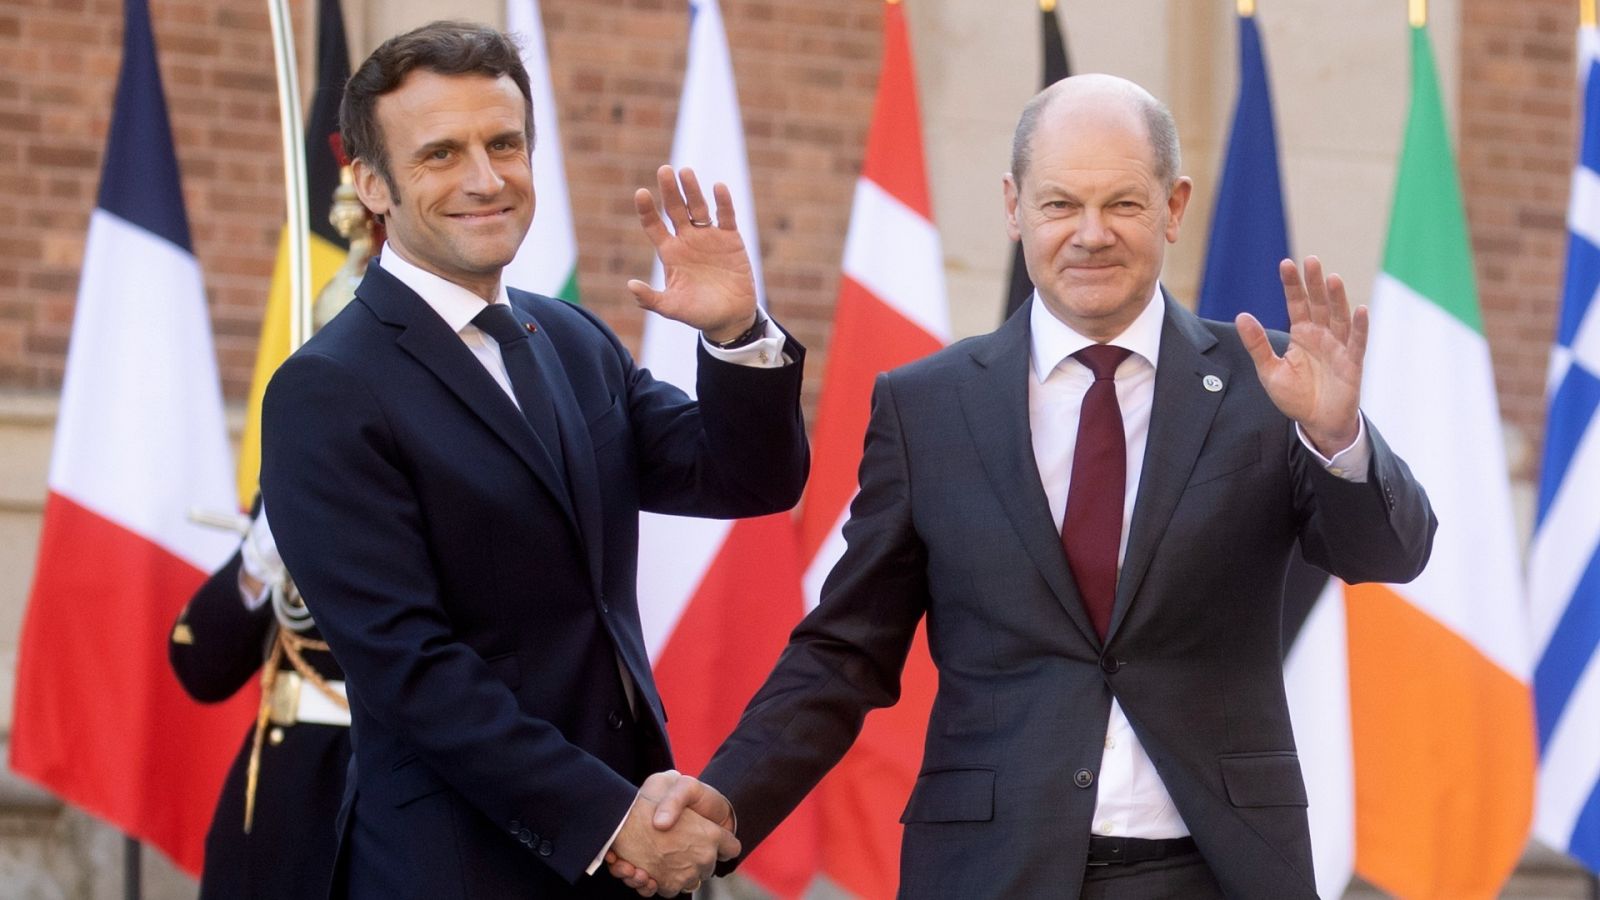 El presidente francés, Emmanuel Macron, saluda al canciller alemán, Olaf Scholz.